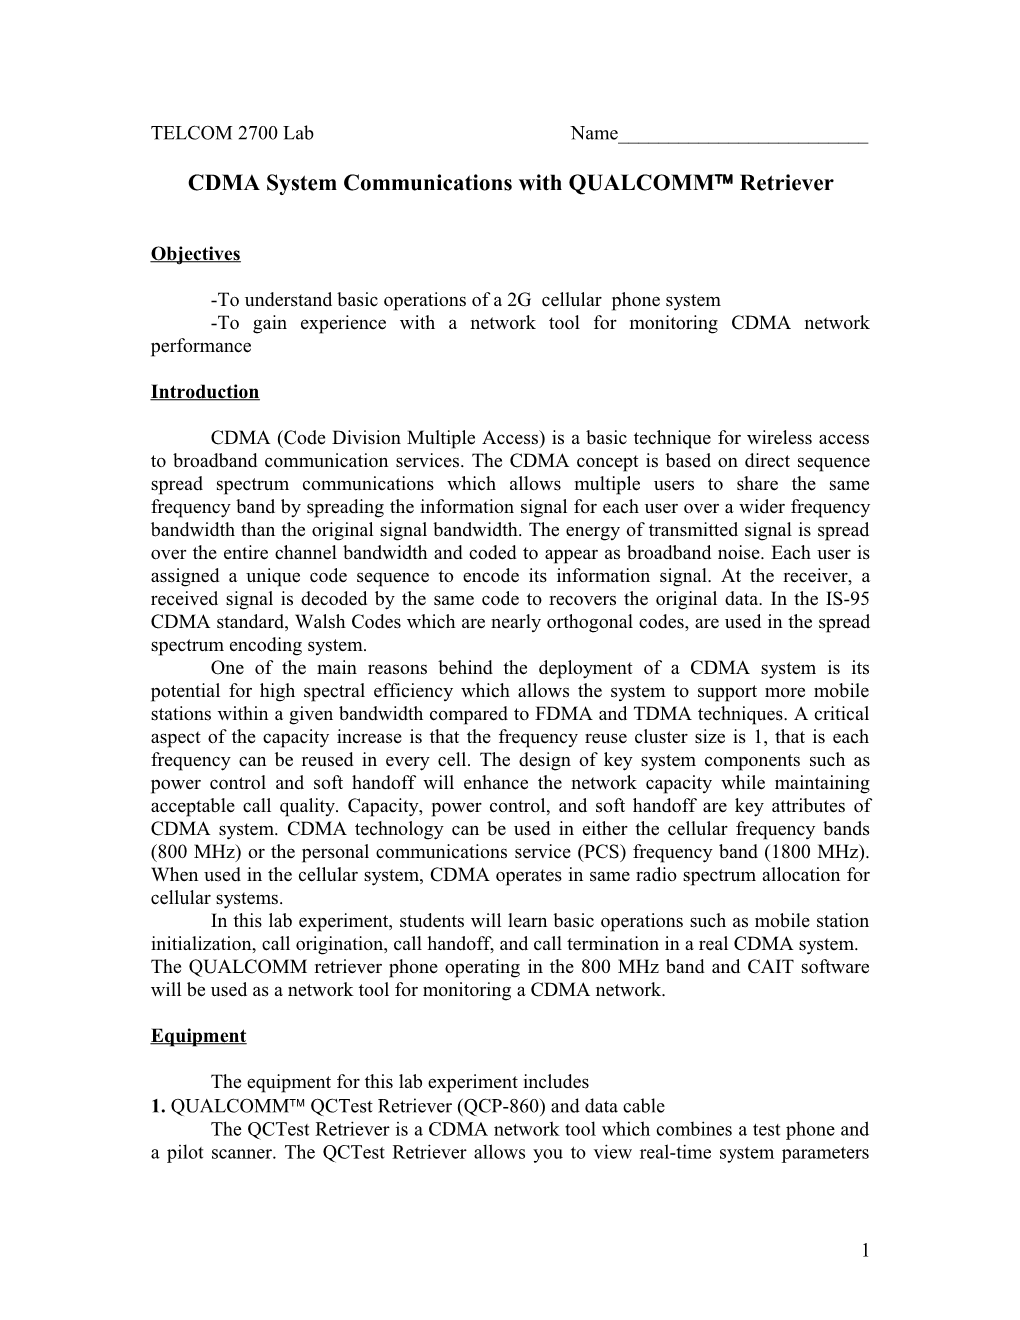 CDMA System Communications with QUALCOMM Retriever